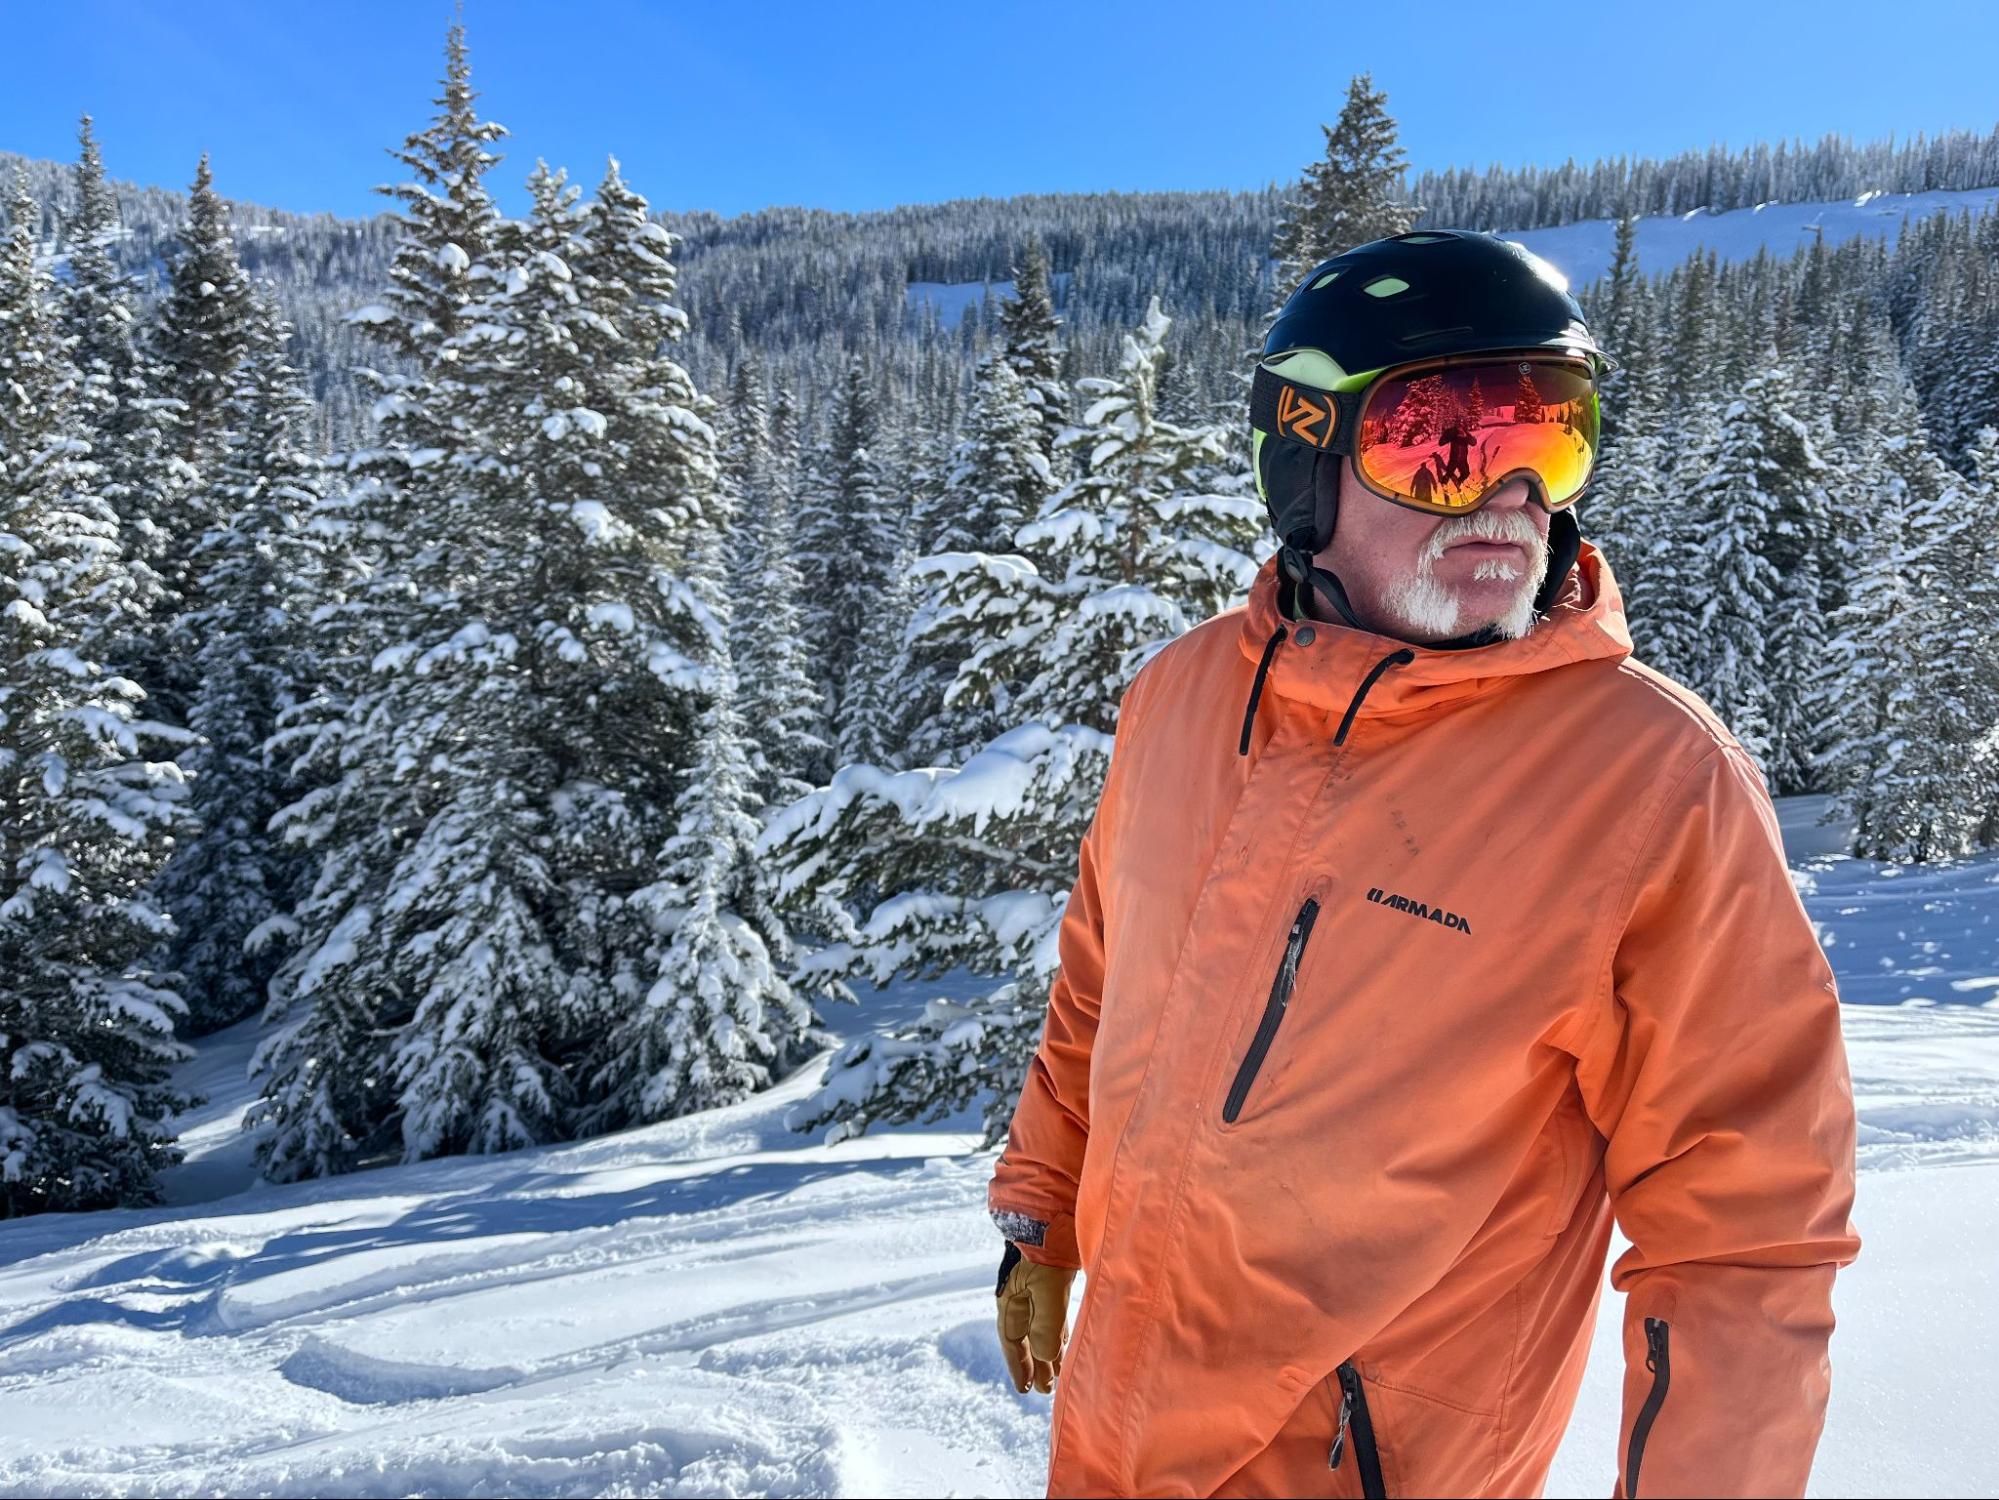 Trevor riding at Vail Ski Resort